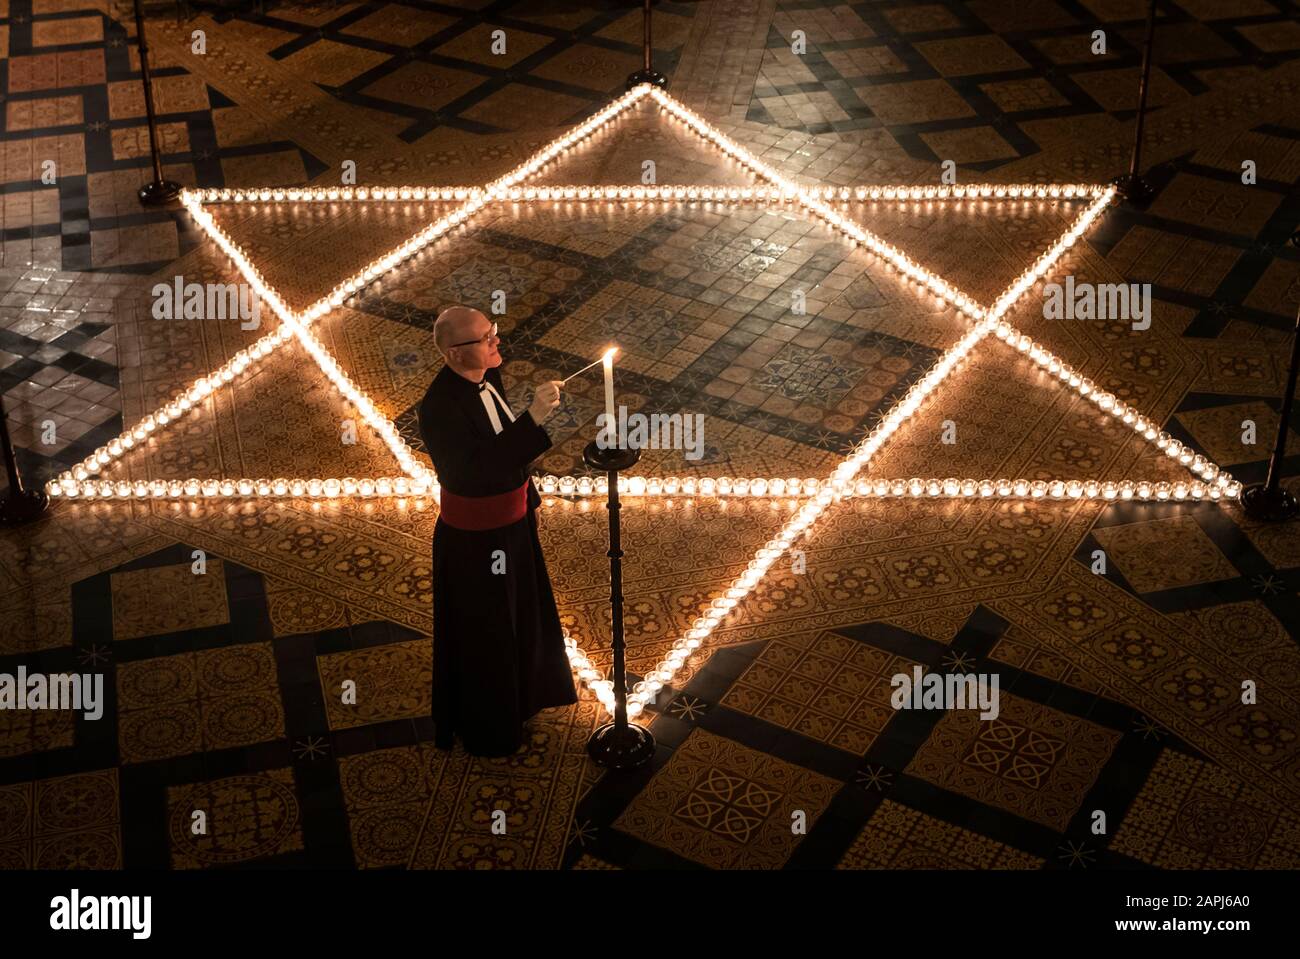 Le chancelier de Canon Christopher Collingwood aide à allumer six cents bougies en forme d'étoile de David, à la mémoire de plus de 6 millions de Juifs assassinés par les nazis pendant la Seconde Guerre mondiale, dans la Maison du Chapitre à York Minster, à York, Dans le cadre de la commémoration de la Journée internationale de l'Holocauste par York Minster. Banque D'Images